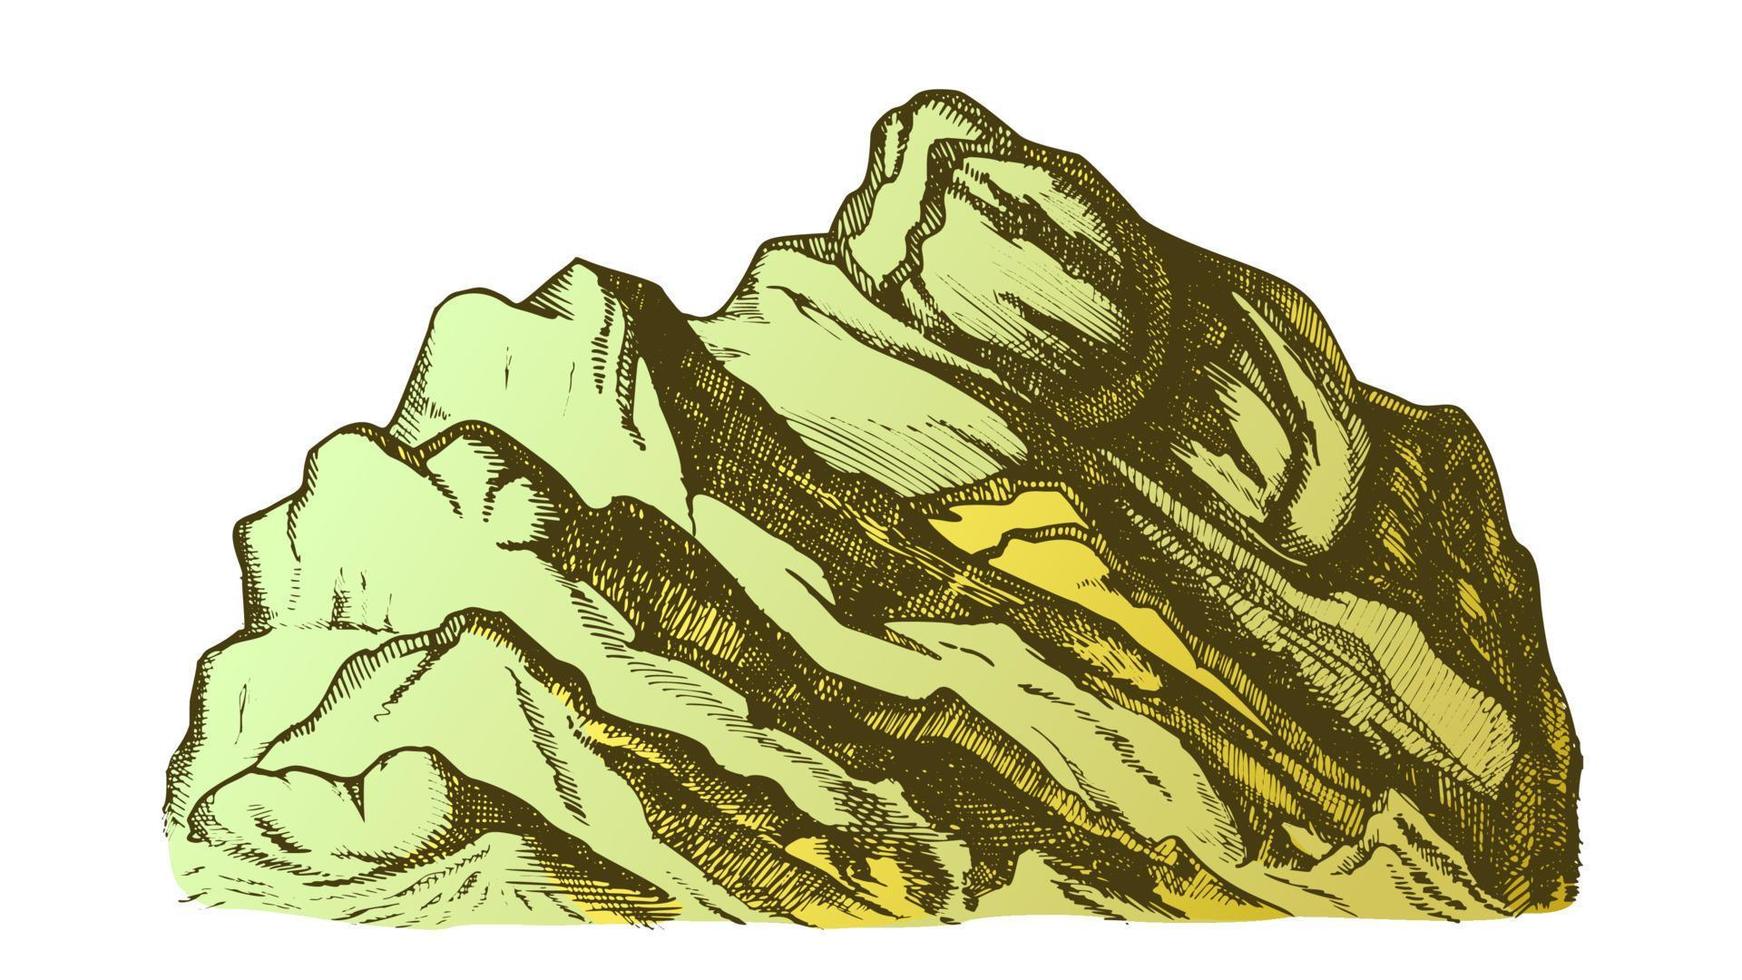 Farbgipfel des handgezeichneten Vektors der Berglandschaft vektor